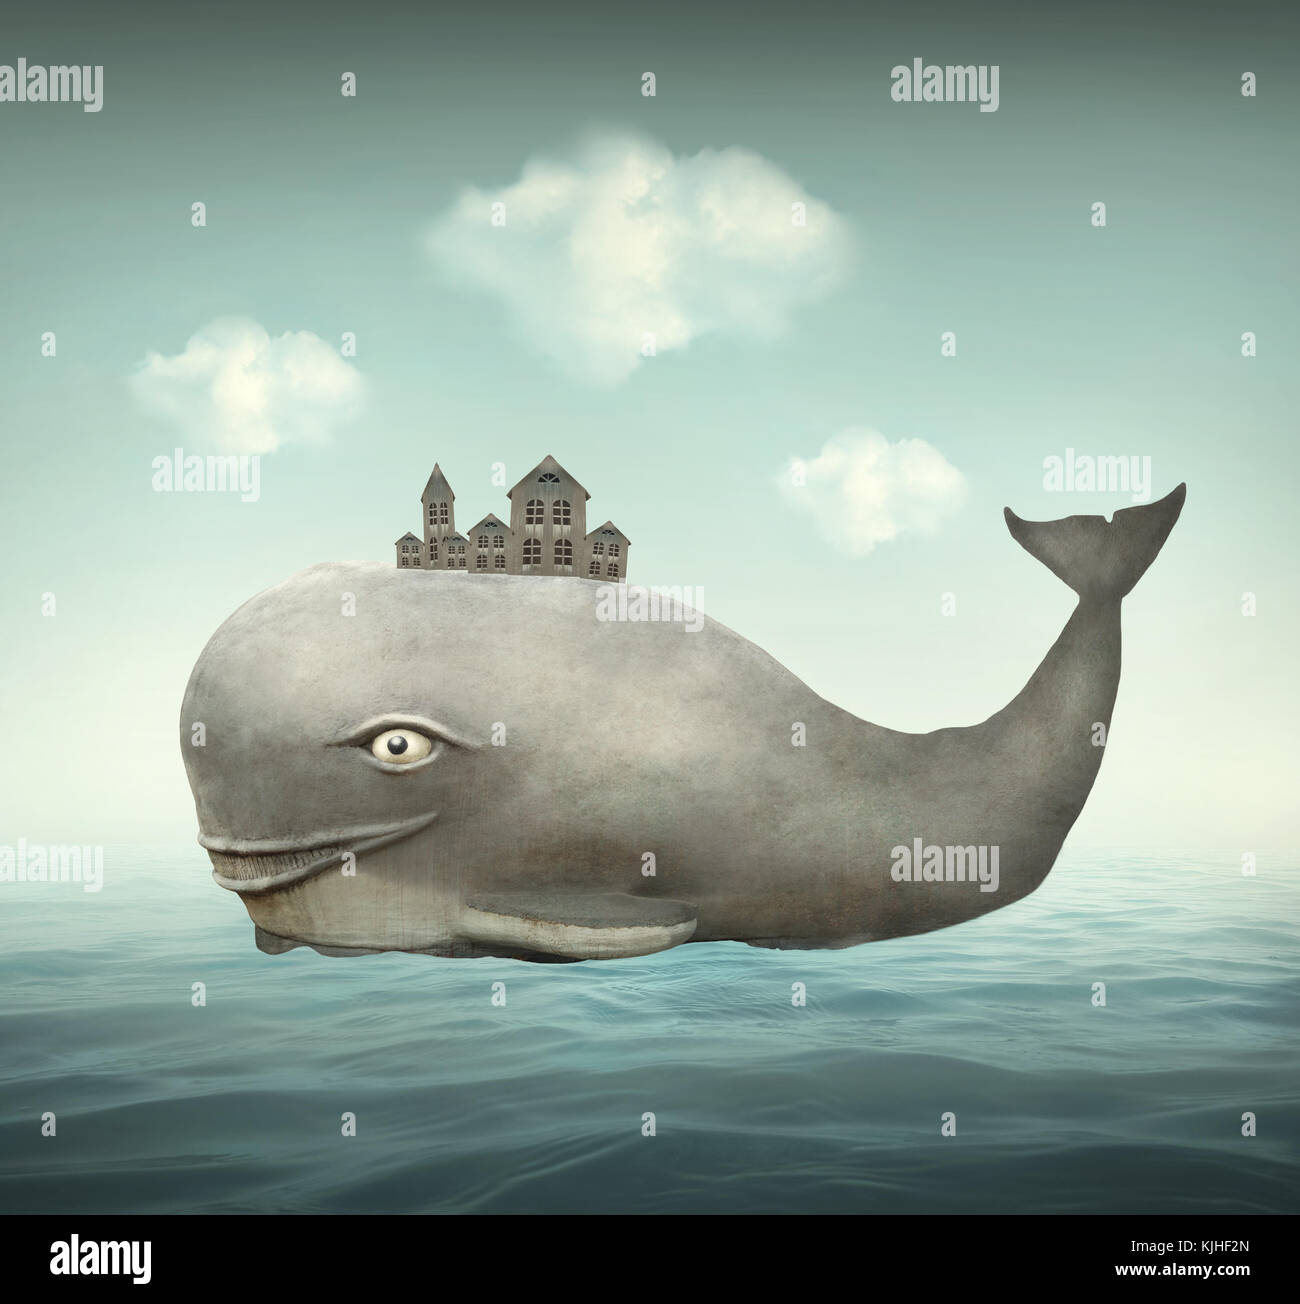 Illustration surréaliste d'une baleine dans l'océan avec quelques maisons dans le dos Banque D'Images